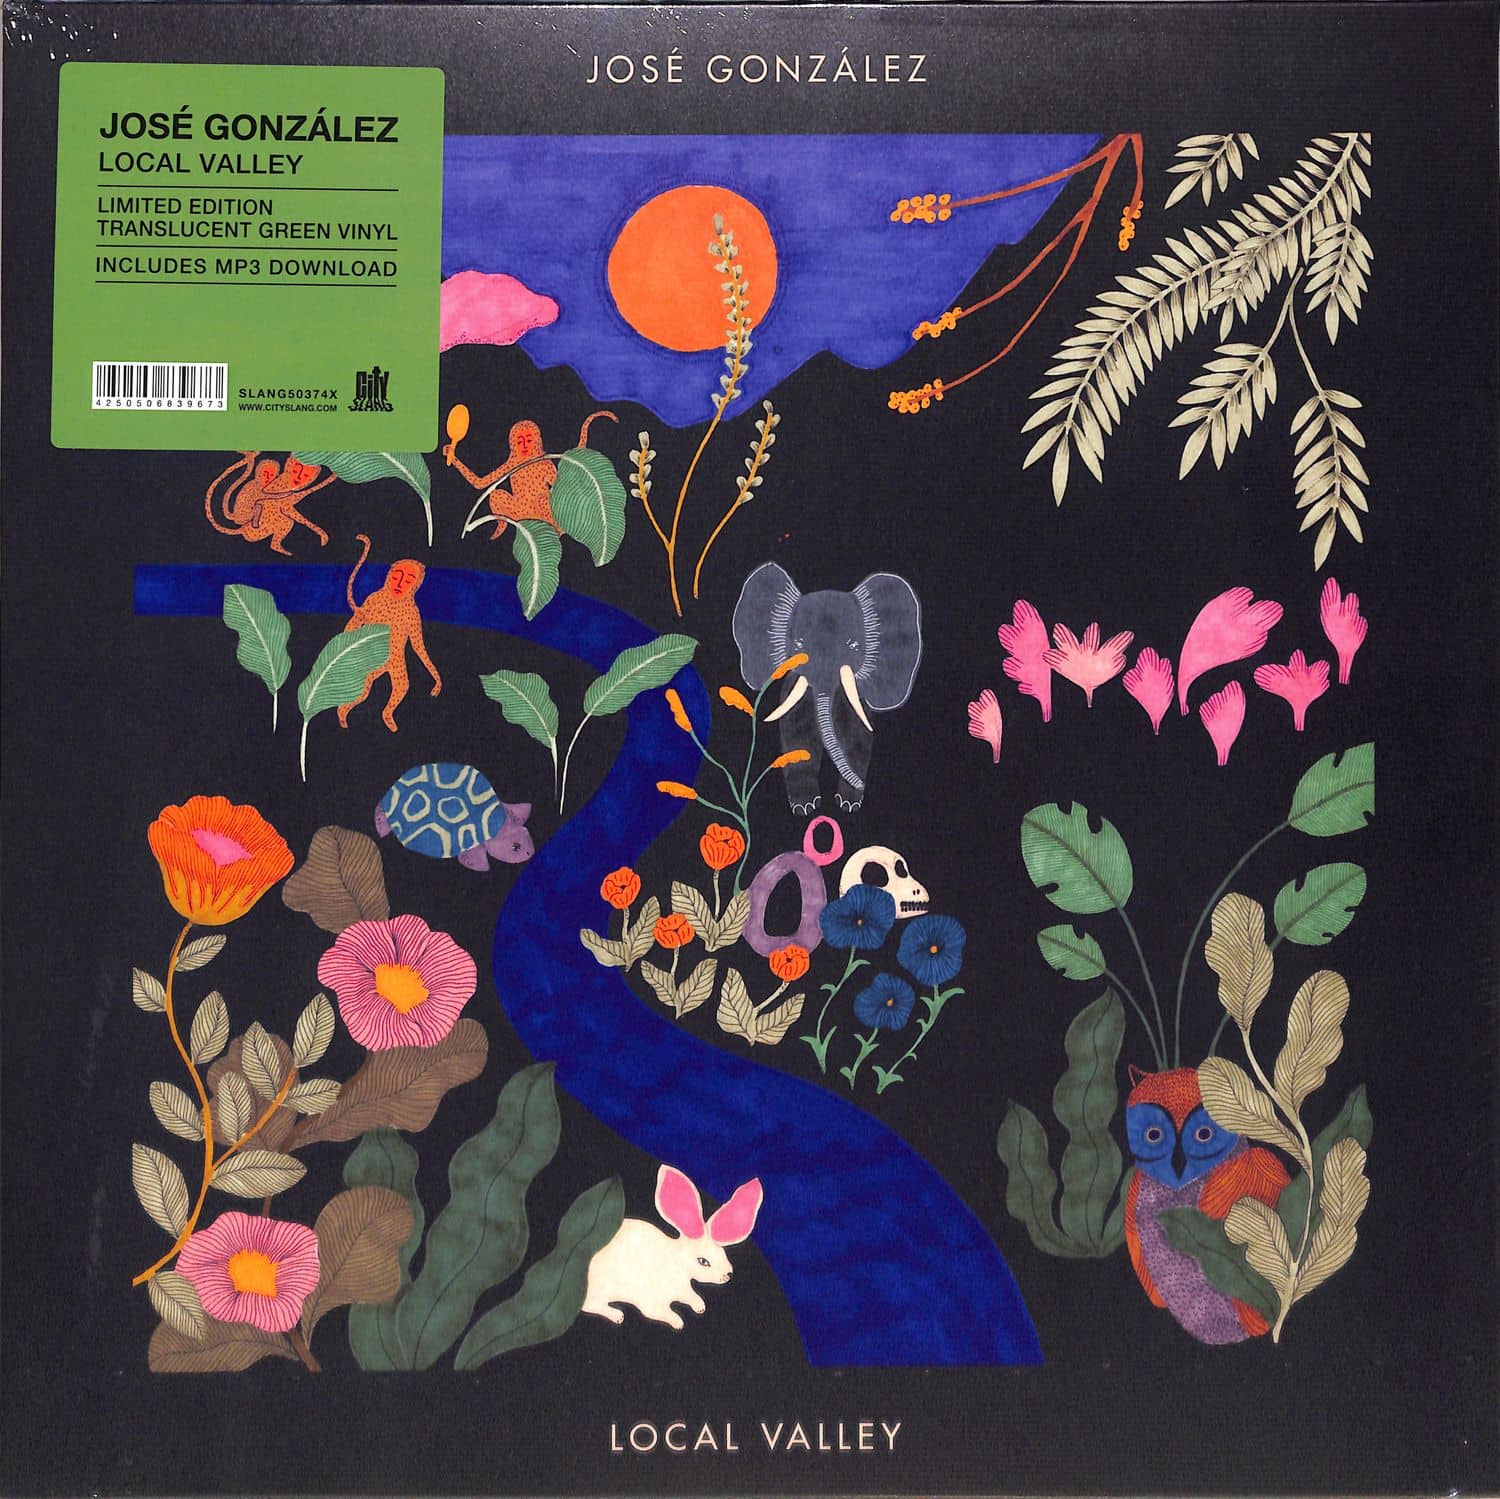 Jose Gonzalez - LOCAL VALLEY 